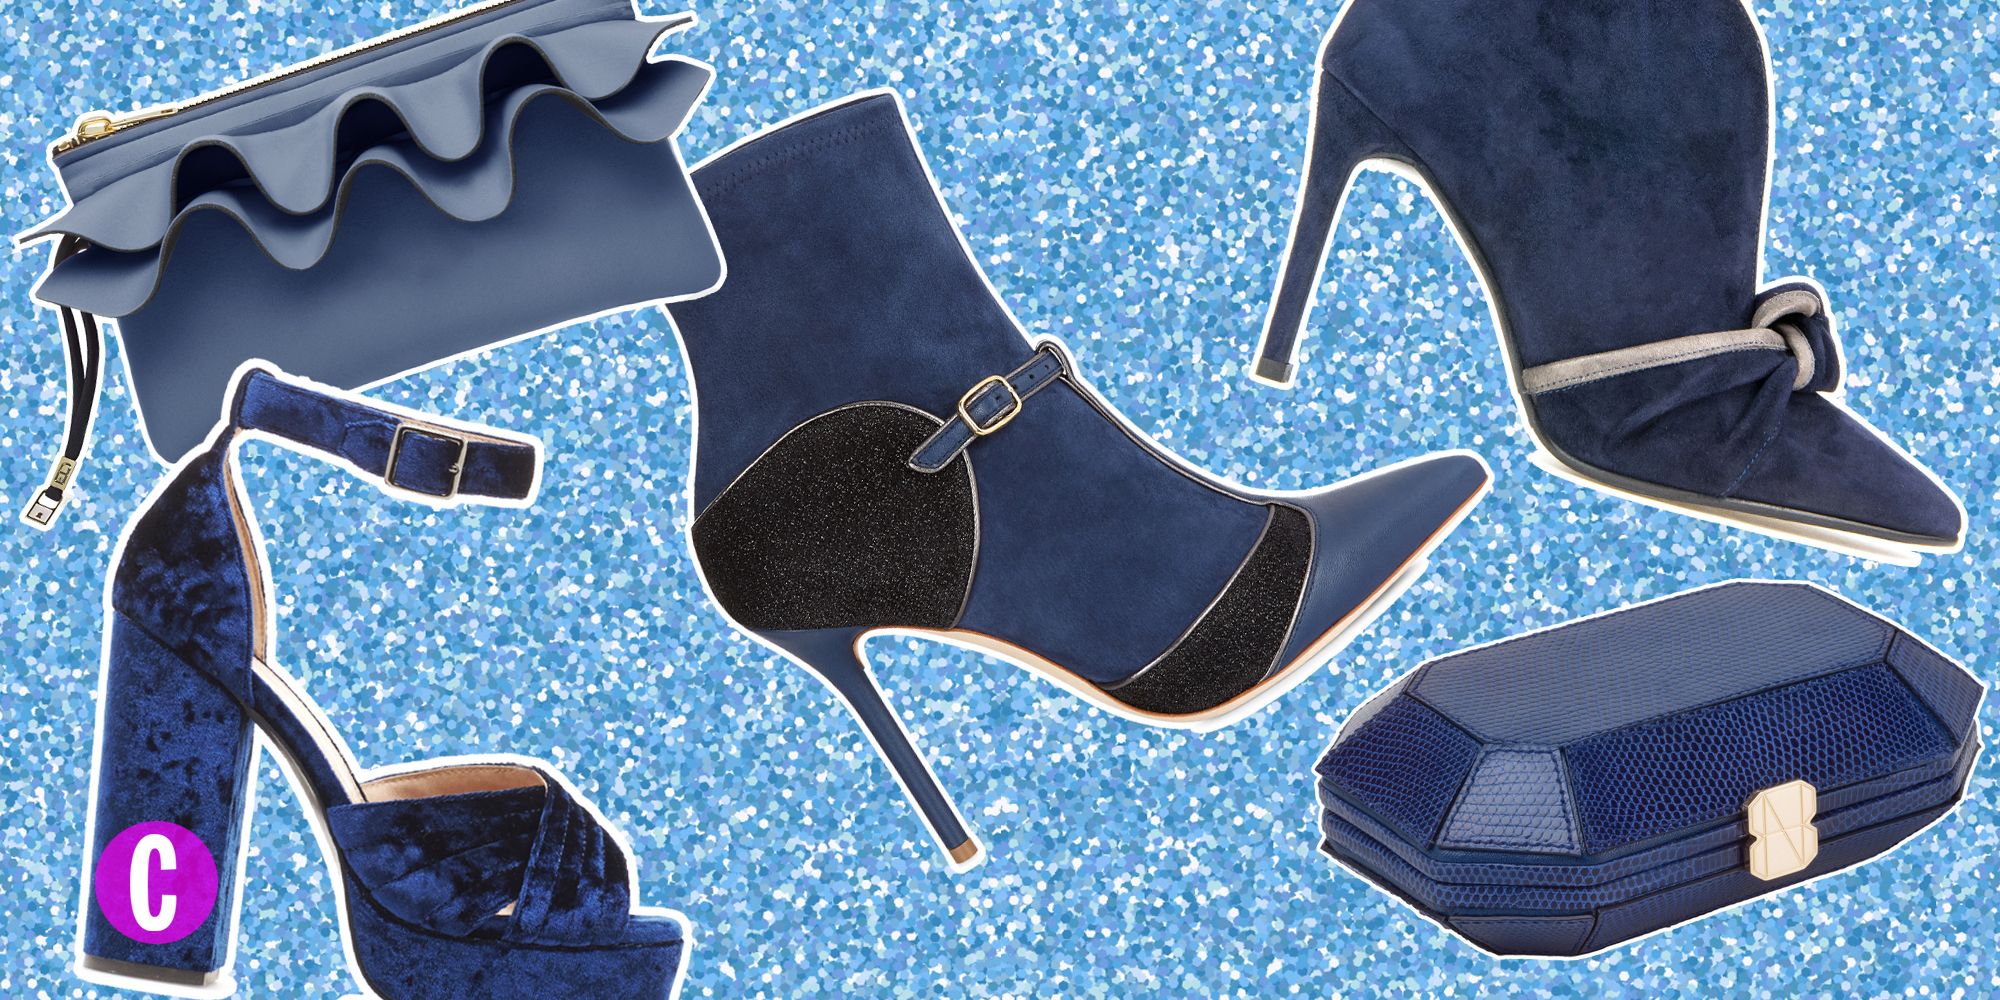 Le scarpe e le borse blu sono gli accessori moda per i tuoi look delle feste